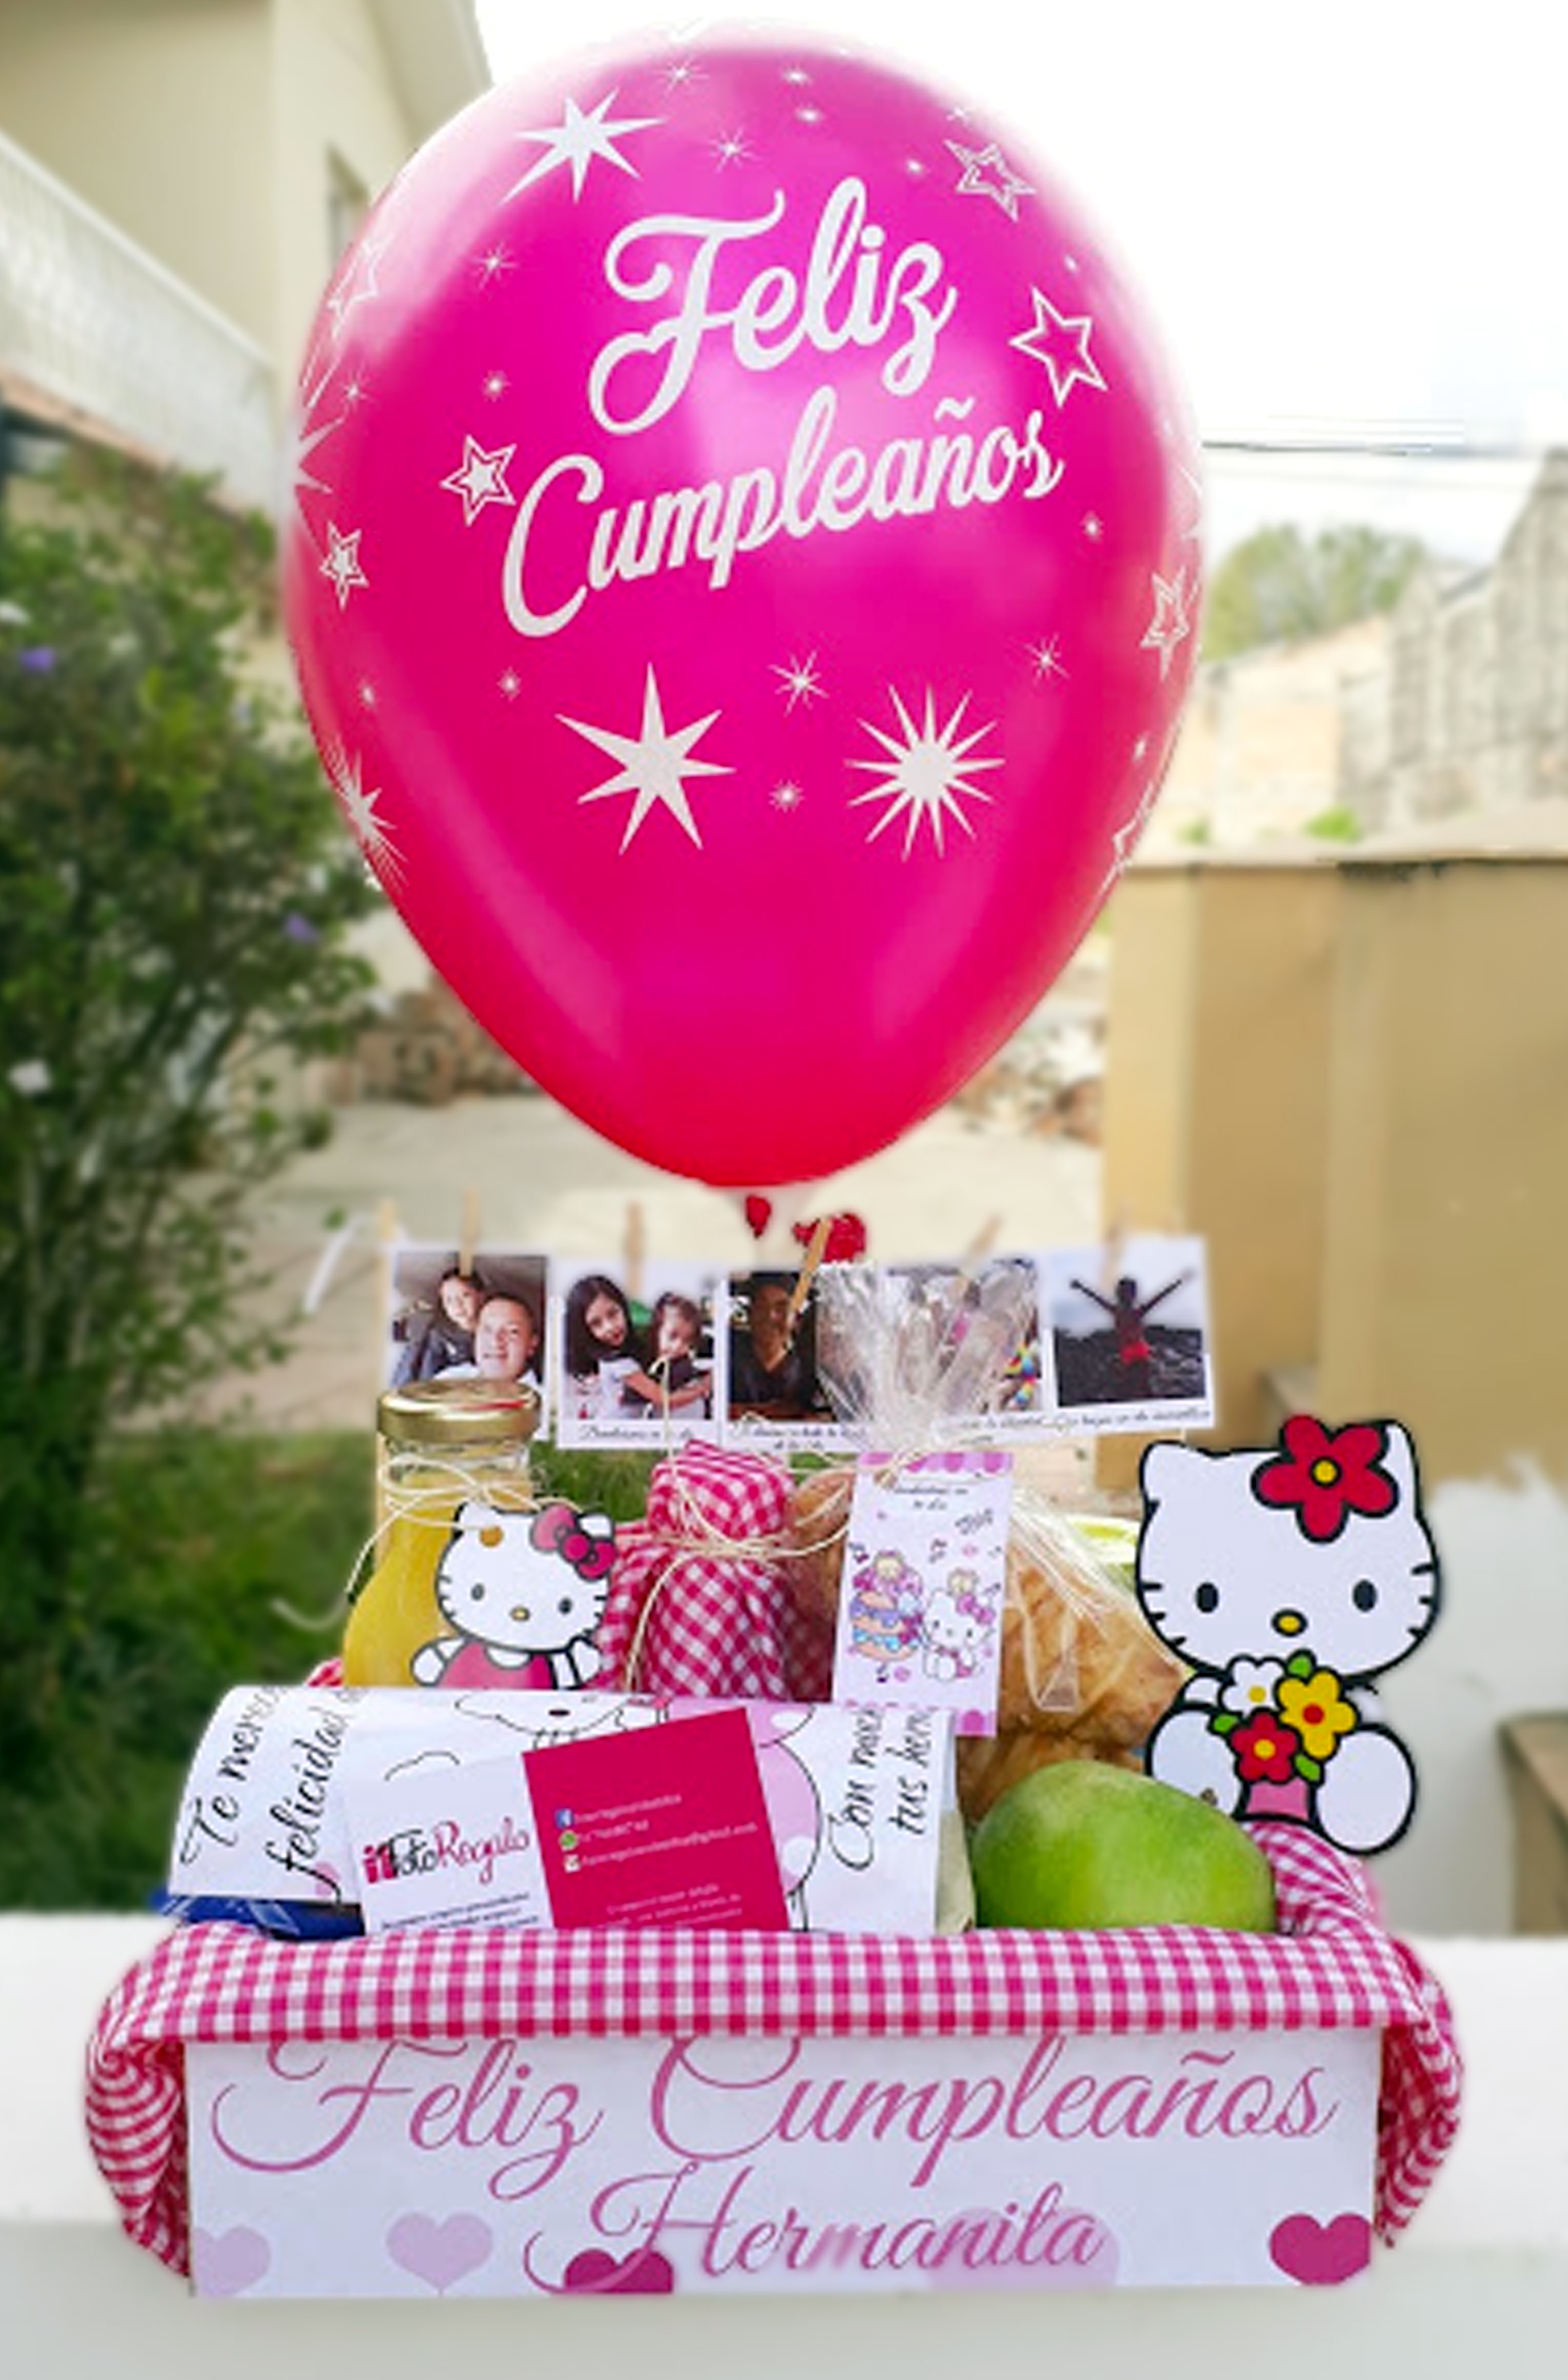 Desayunos sorpresa Popayán - Feliz cumpleaños con fotos personalizado